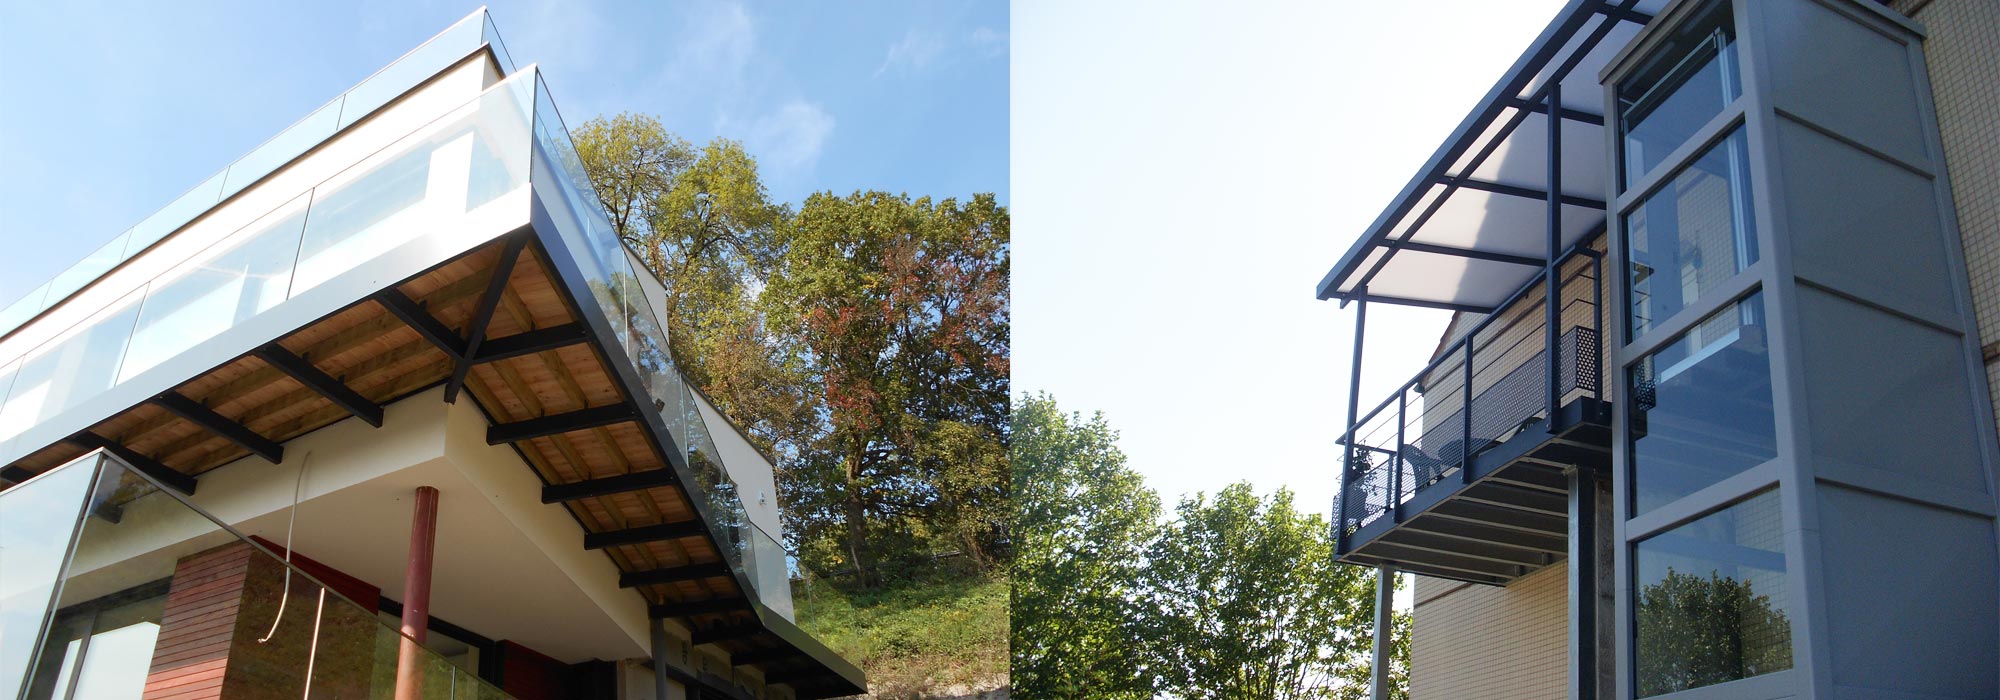 Fabricant-Concepteur de terrasses et balcons suspendus en Lorraine - Alsace
